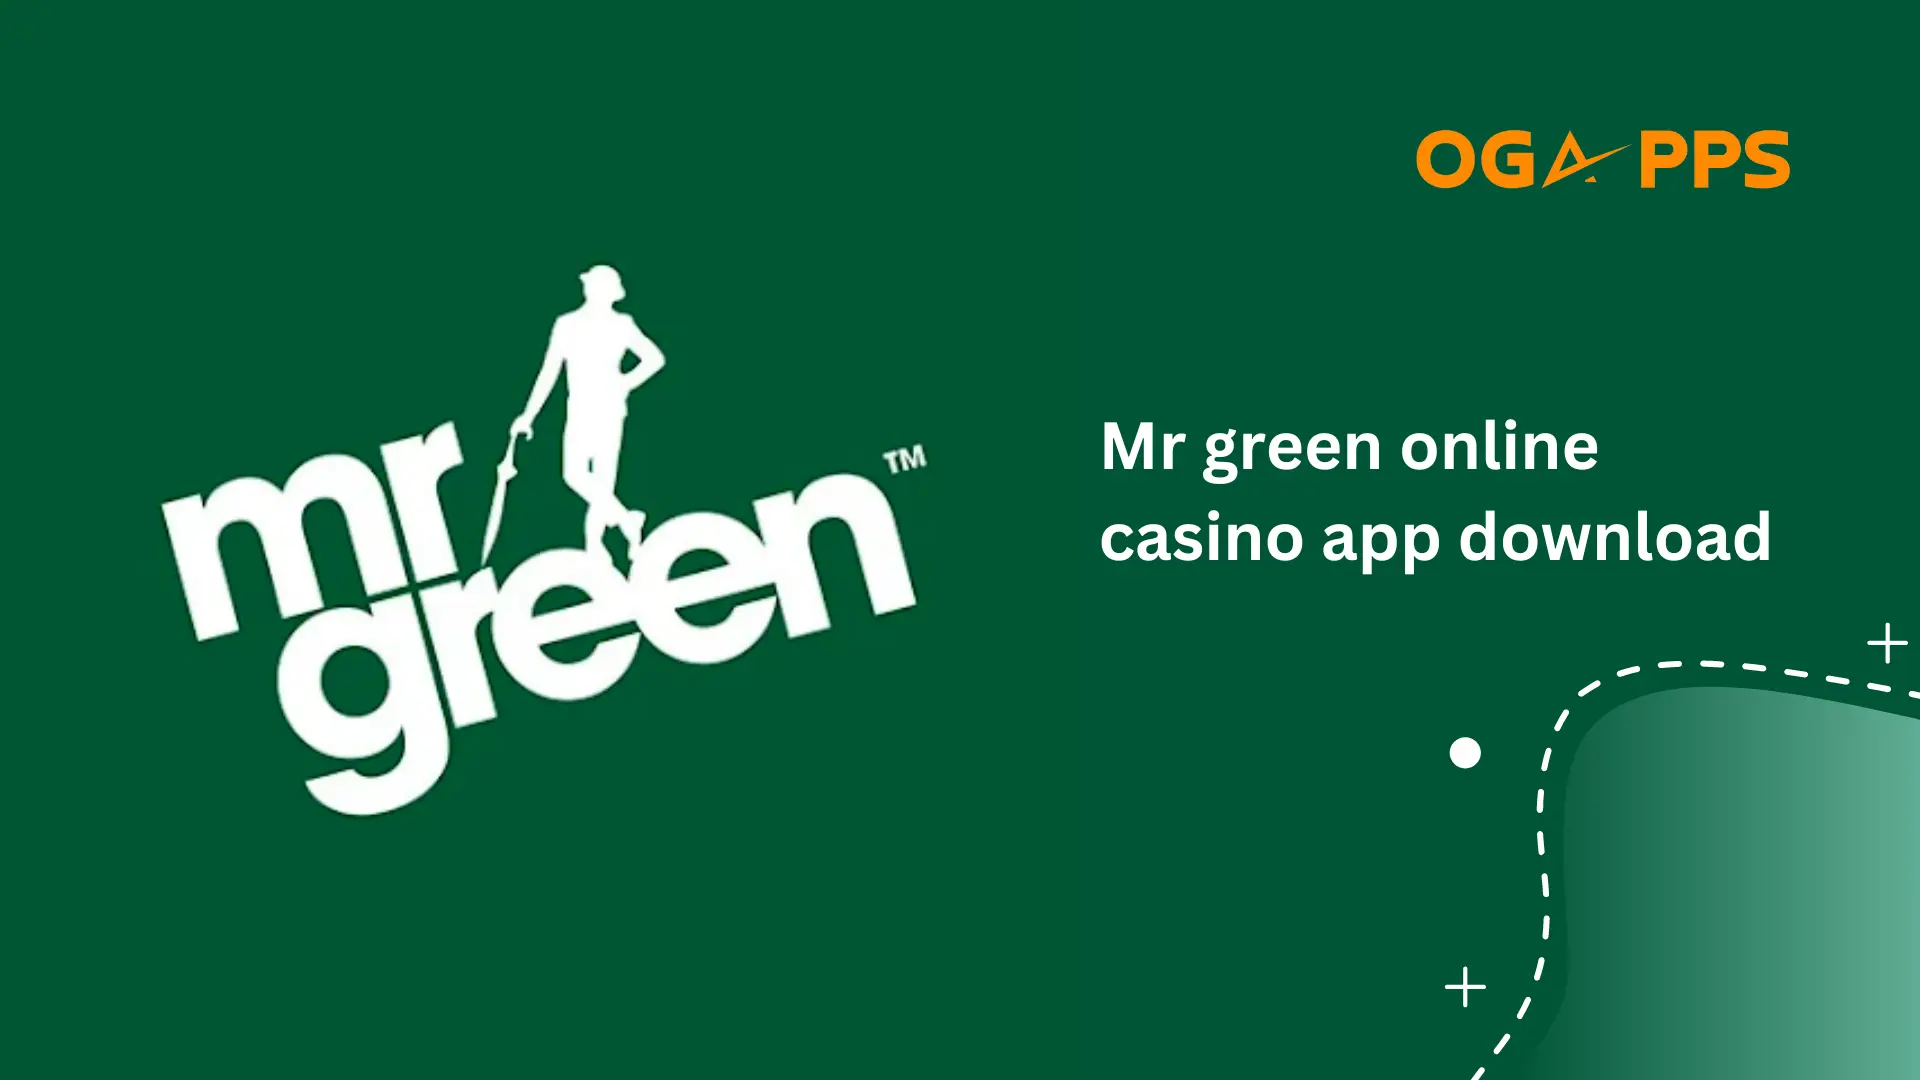 Mr green online casino app download